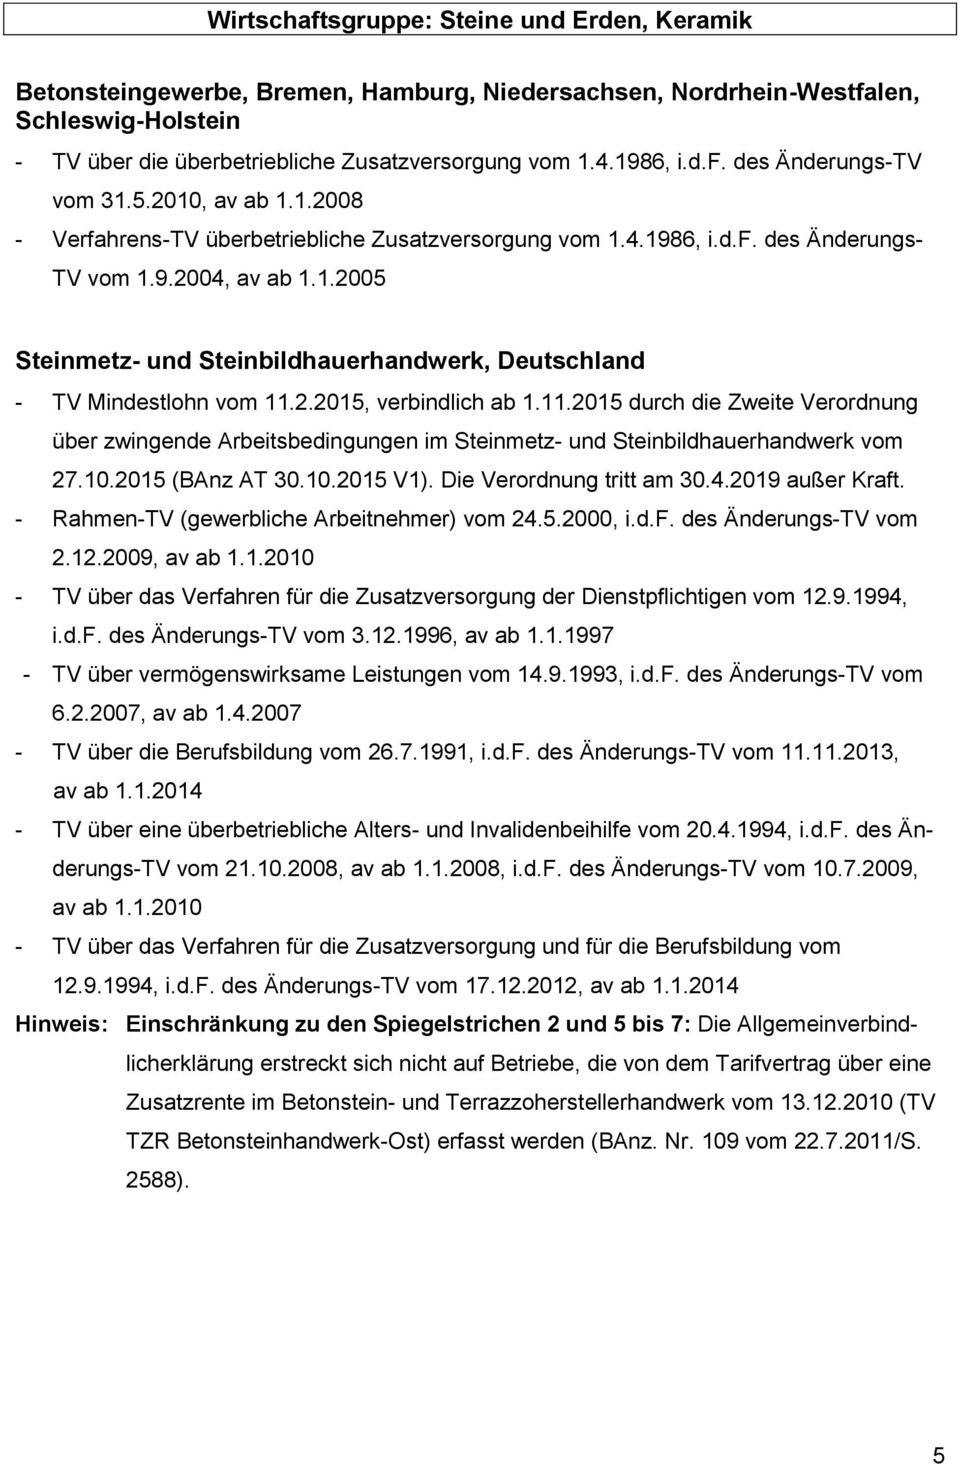 2.2015, verbindlich ab 1.11.2015 durch die Zweite Verordnung über zwingende Arbeitsbedingungen im Steinmetz- und Steinbildhauerhandwerk vom 27.10.2015 (BAnz AT 30.10.2015 V1).